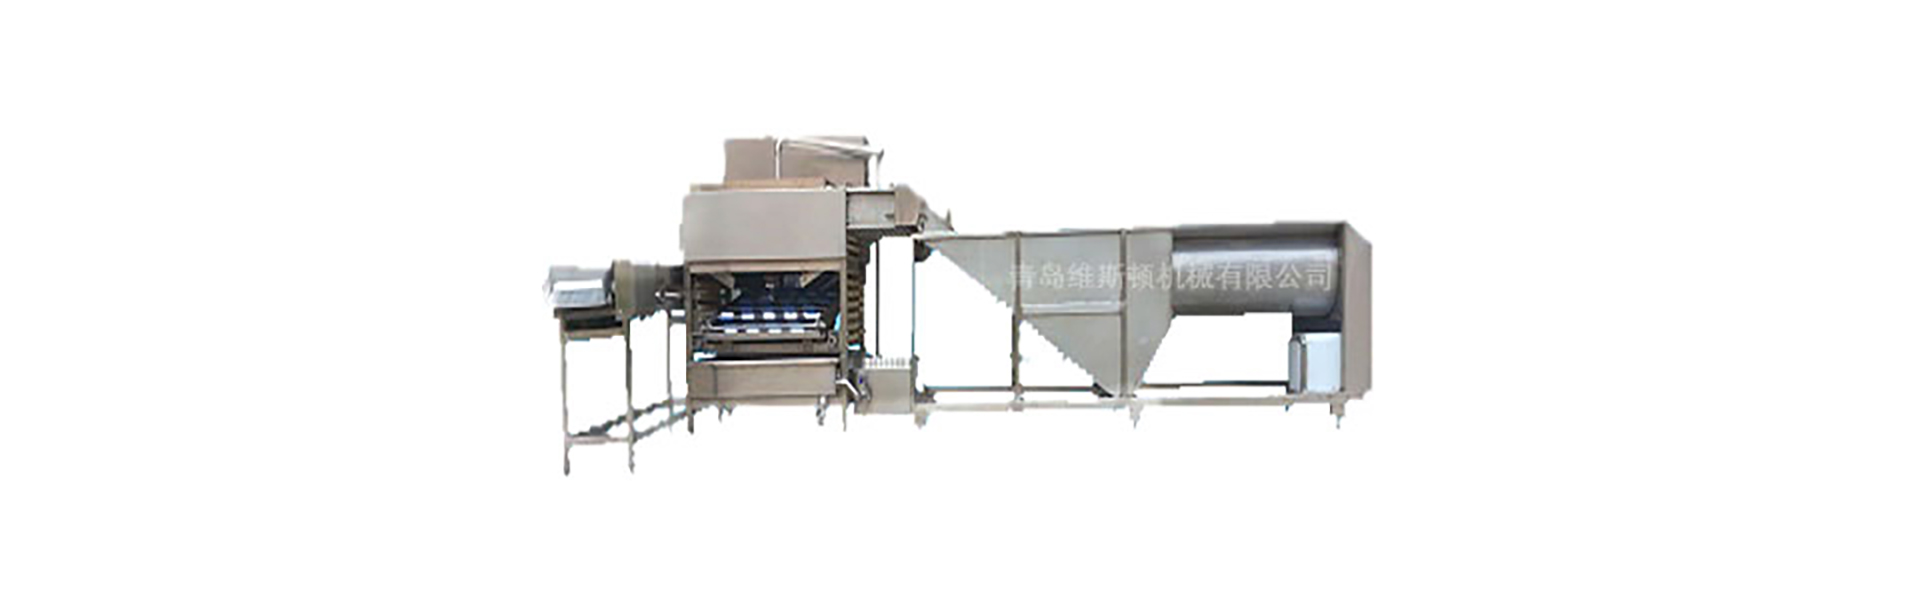 卵破砕機、卵洗浄機、卵等級機械,Qingdao Wisdom Machinery Co.,Ltd